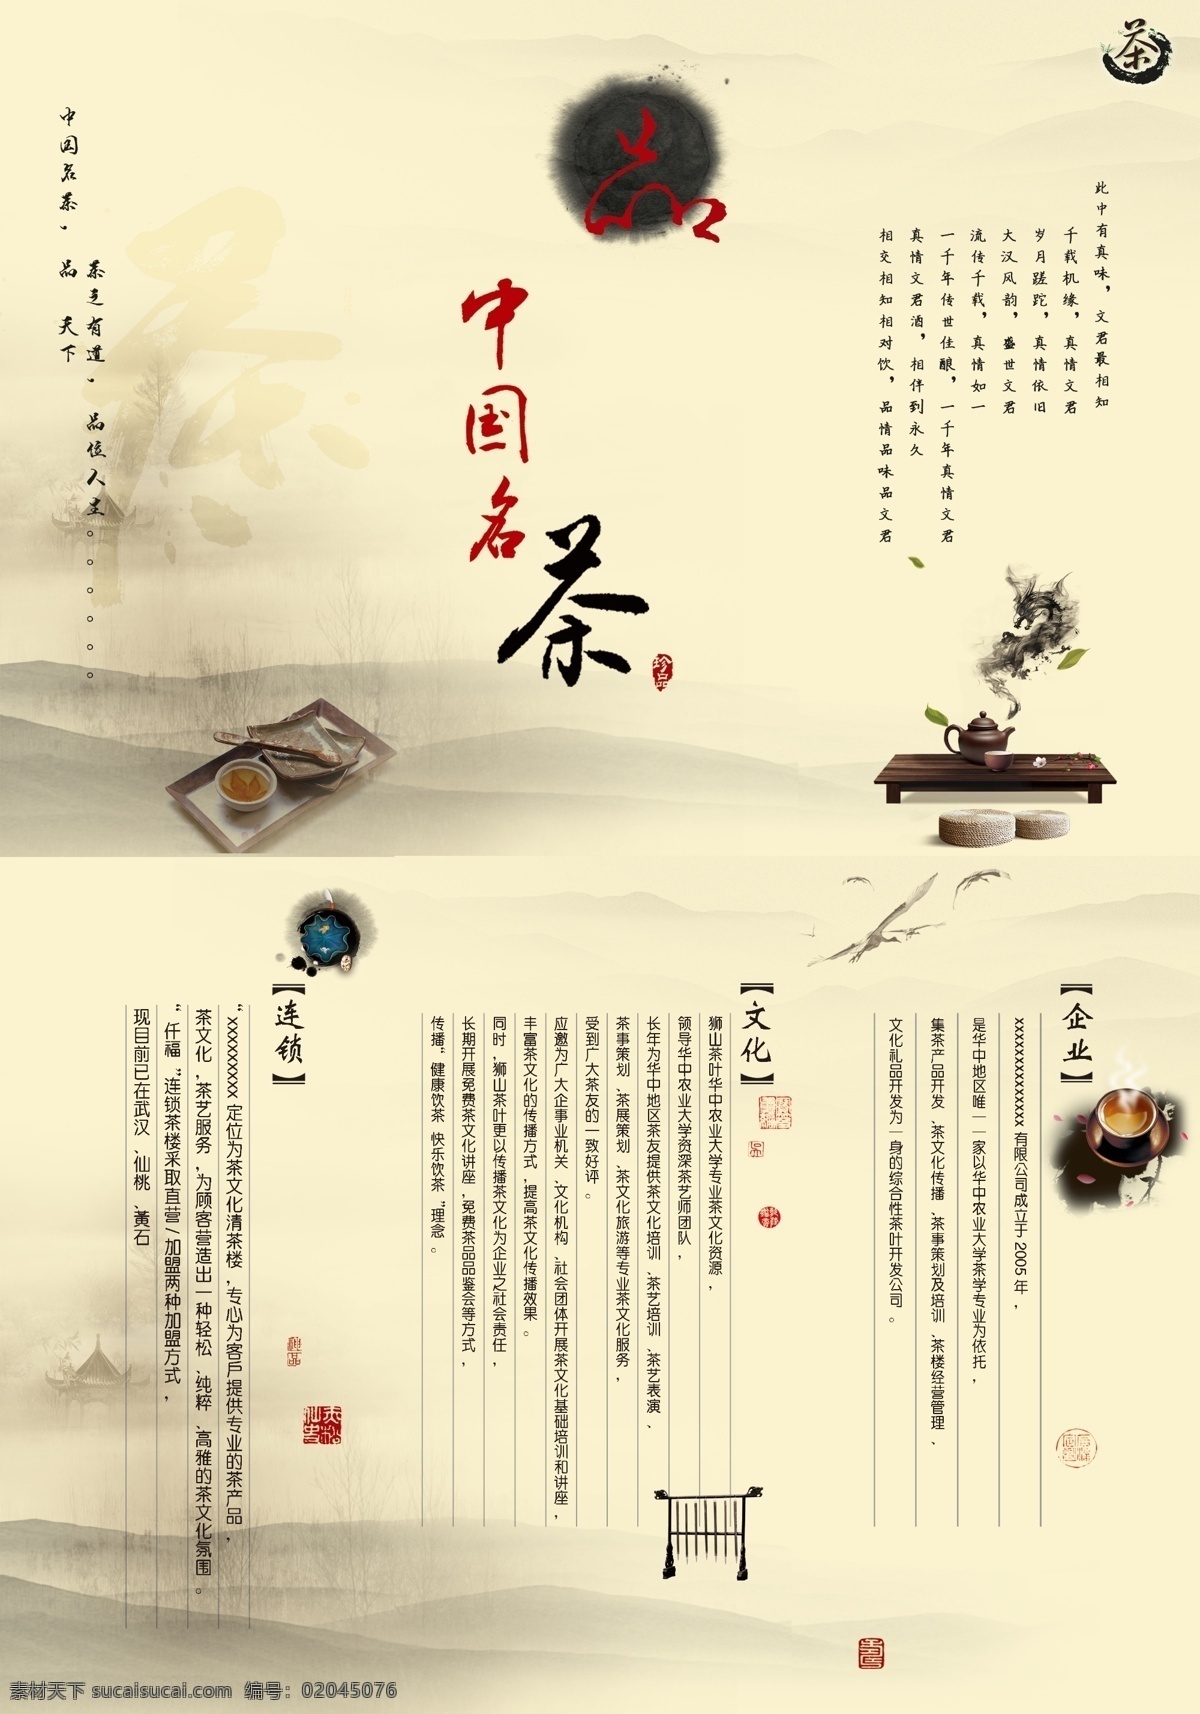 茶文化 浅色背景 小丘 广告 海报 平面设计 包装